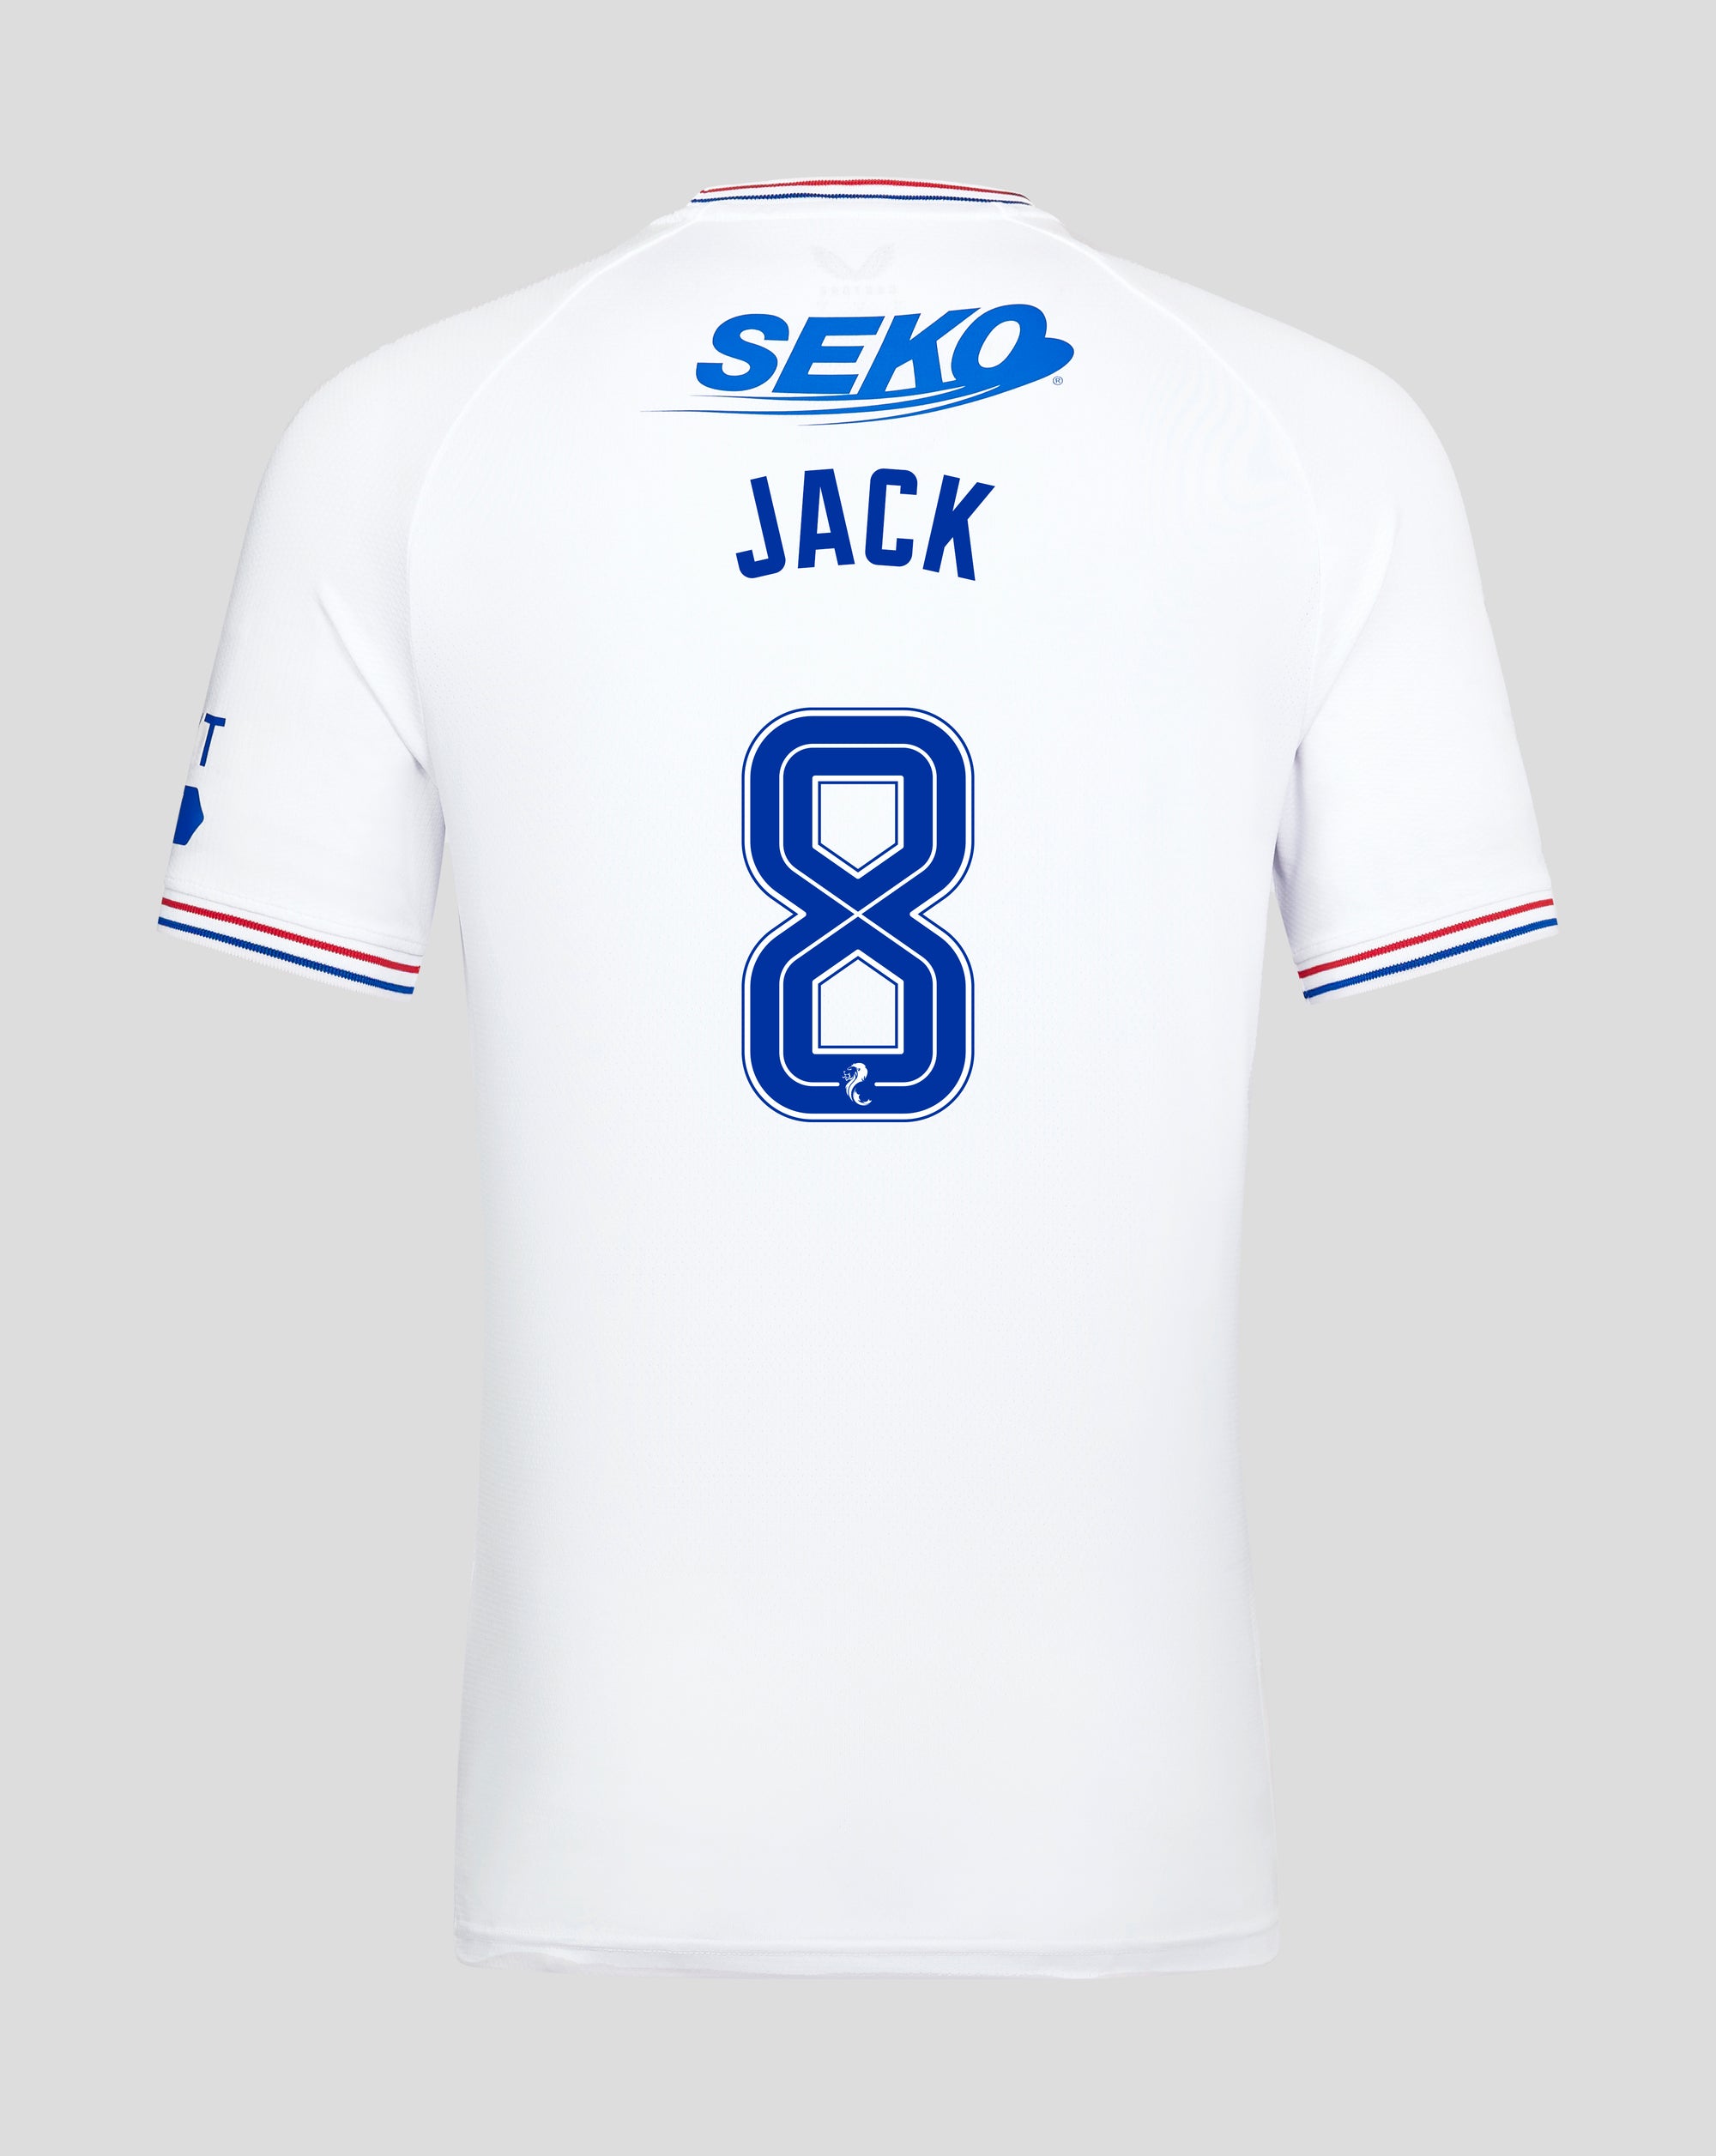 jackpersonalised shirt